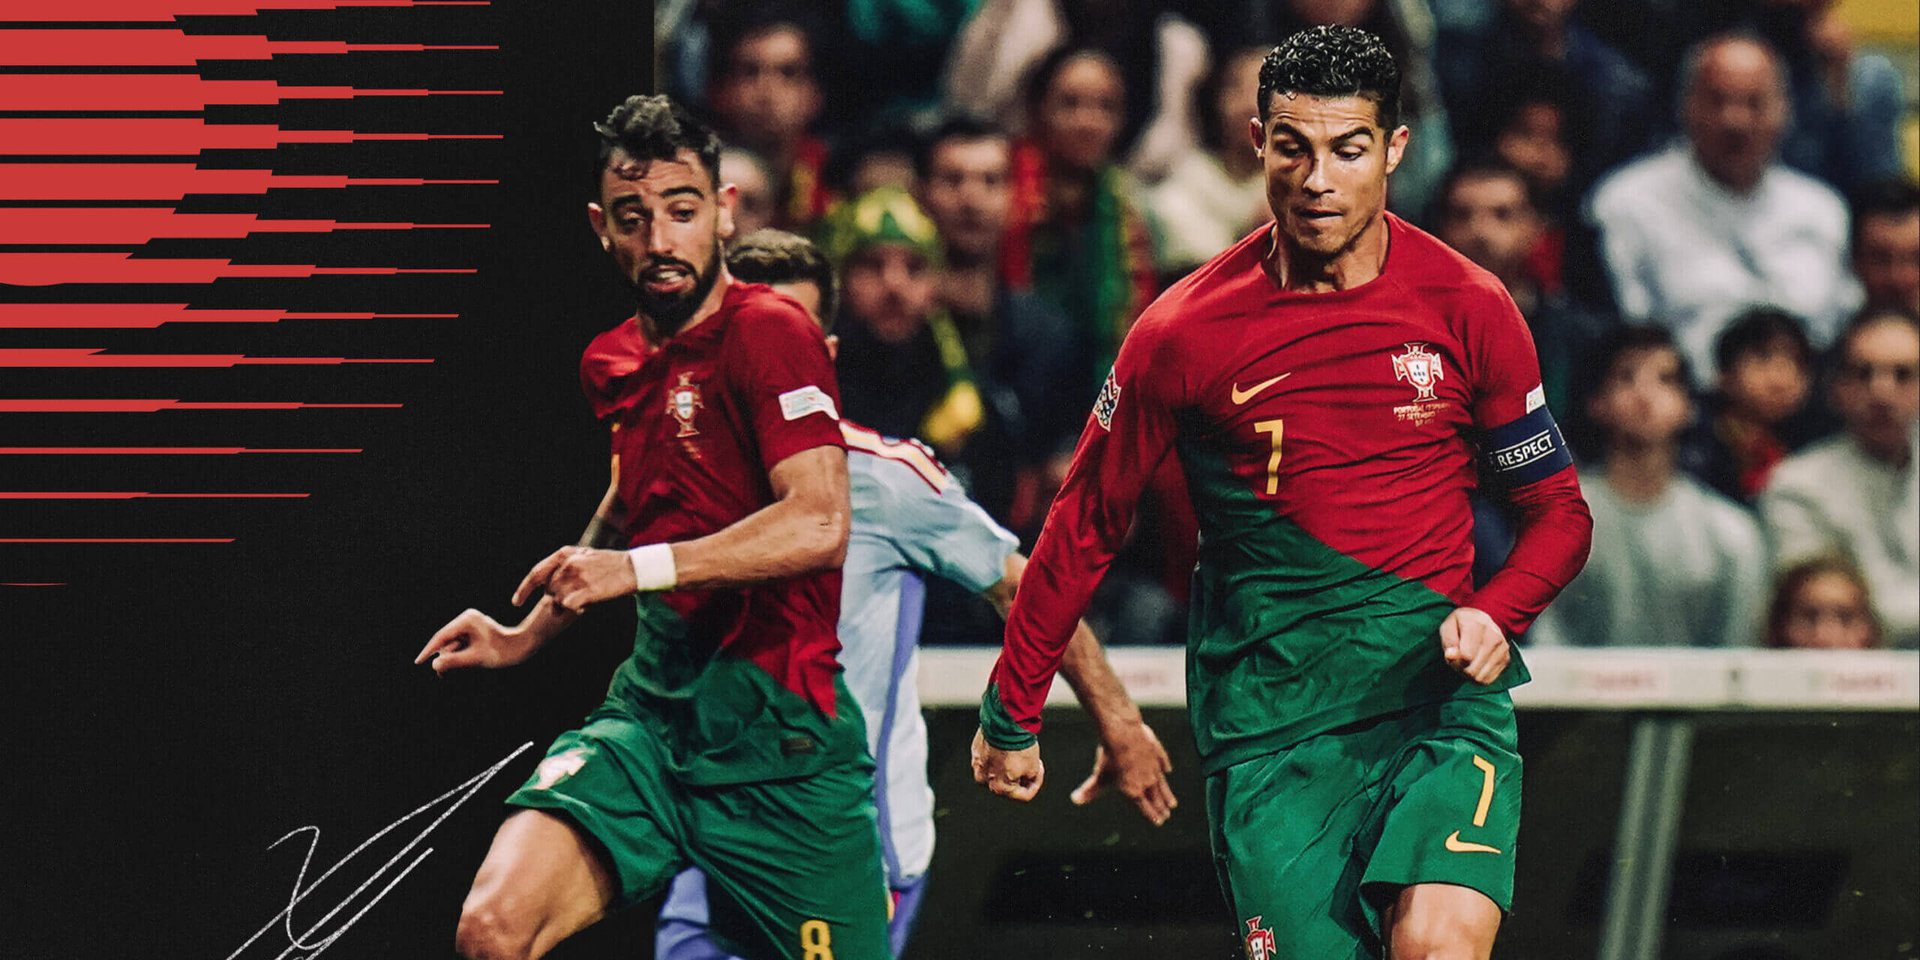 Portugal WK 2022-gids: jonge sterren, ouder wordende sterren en een bekend debat over Ronaldo